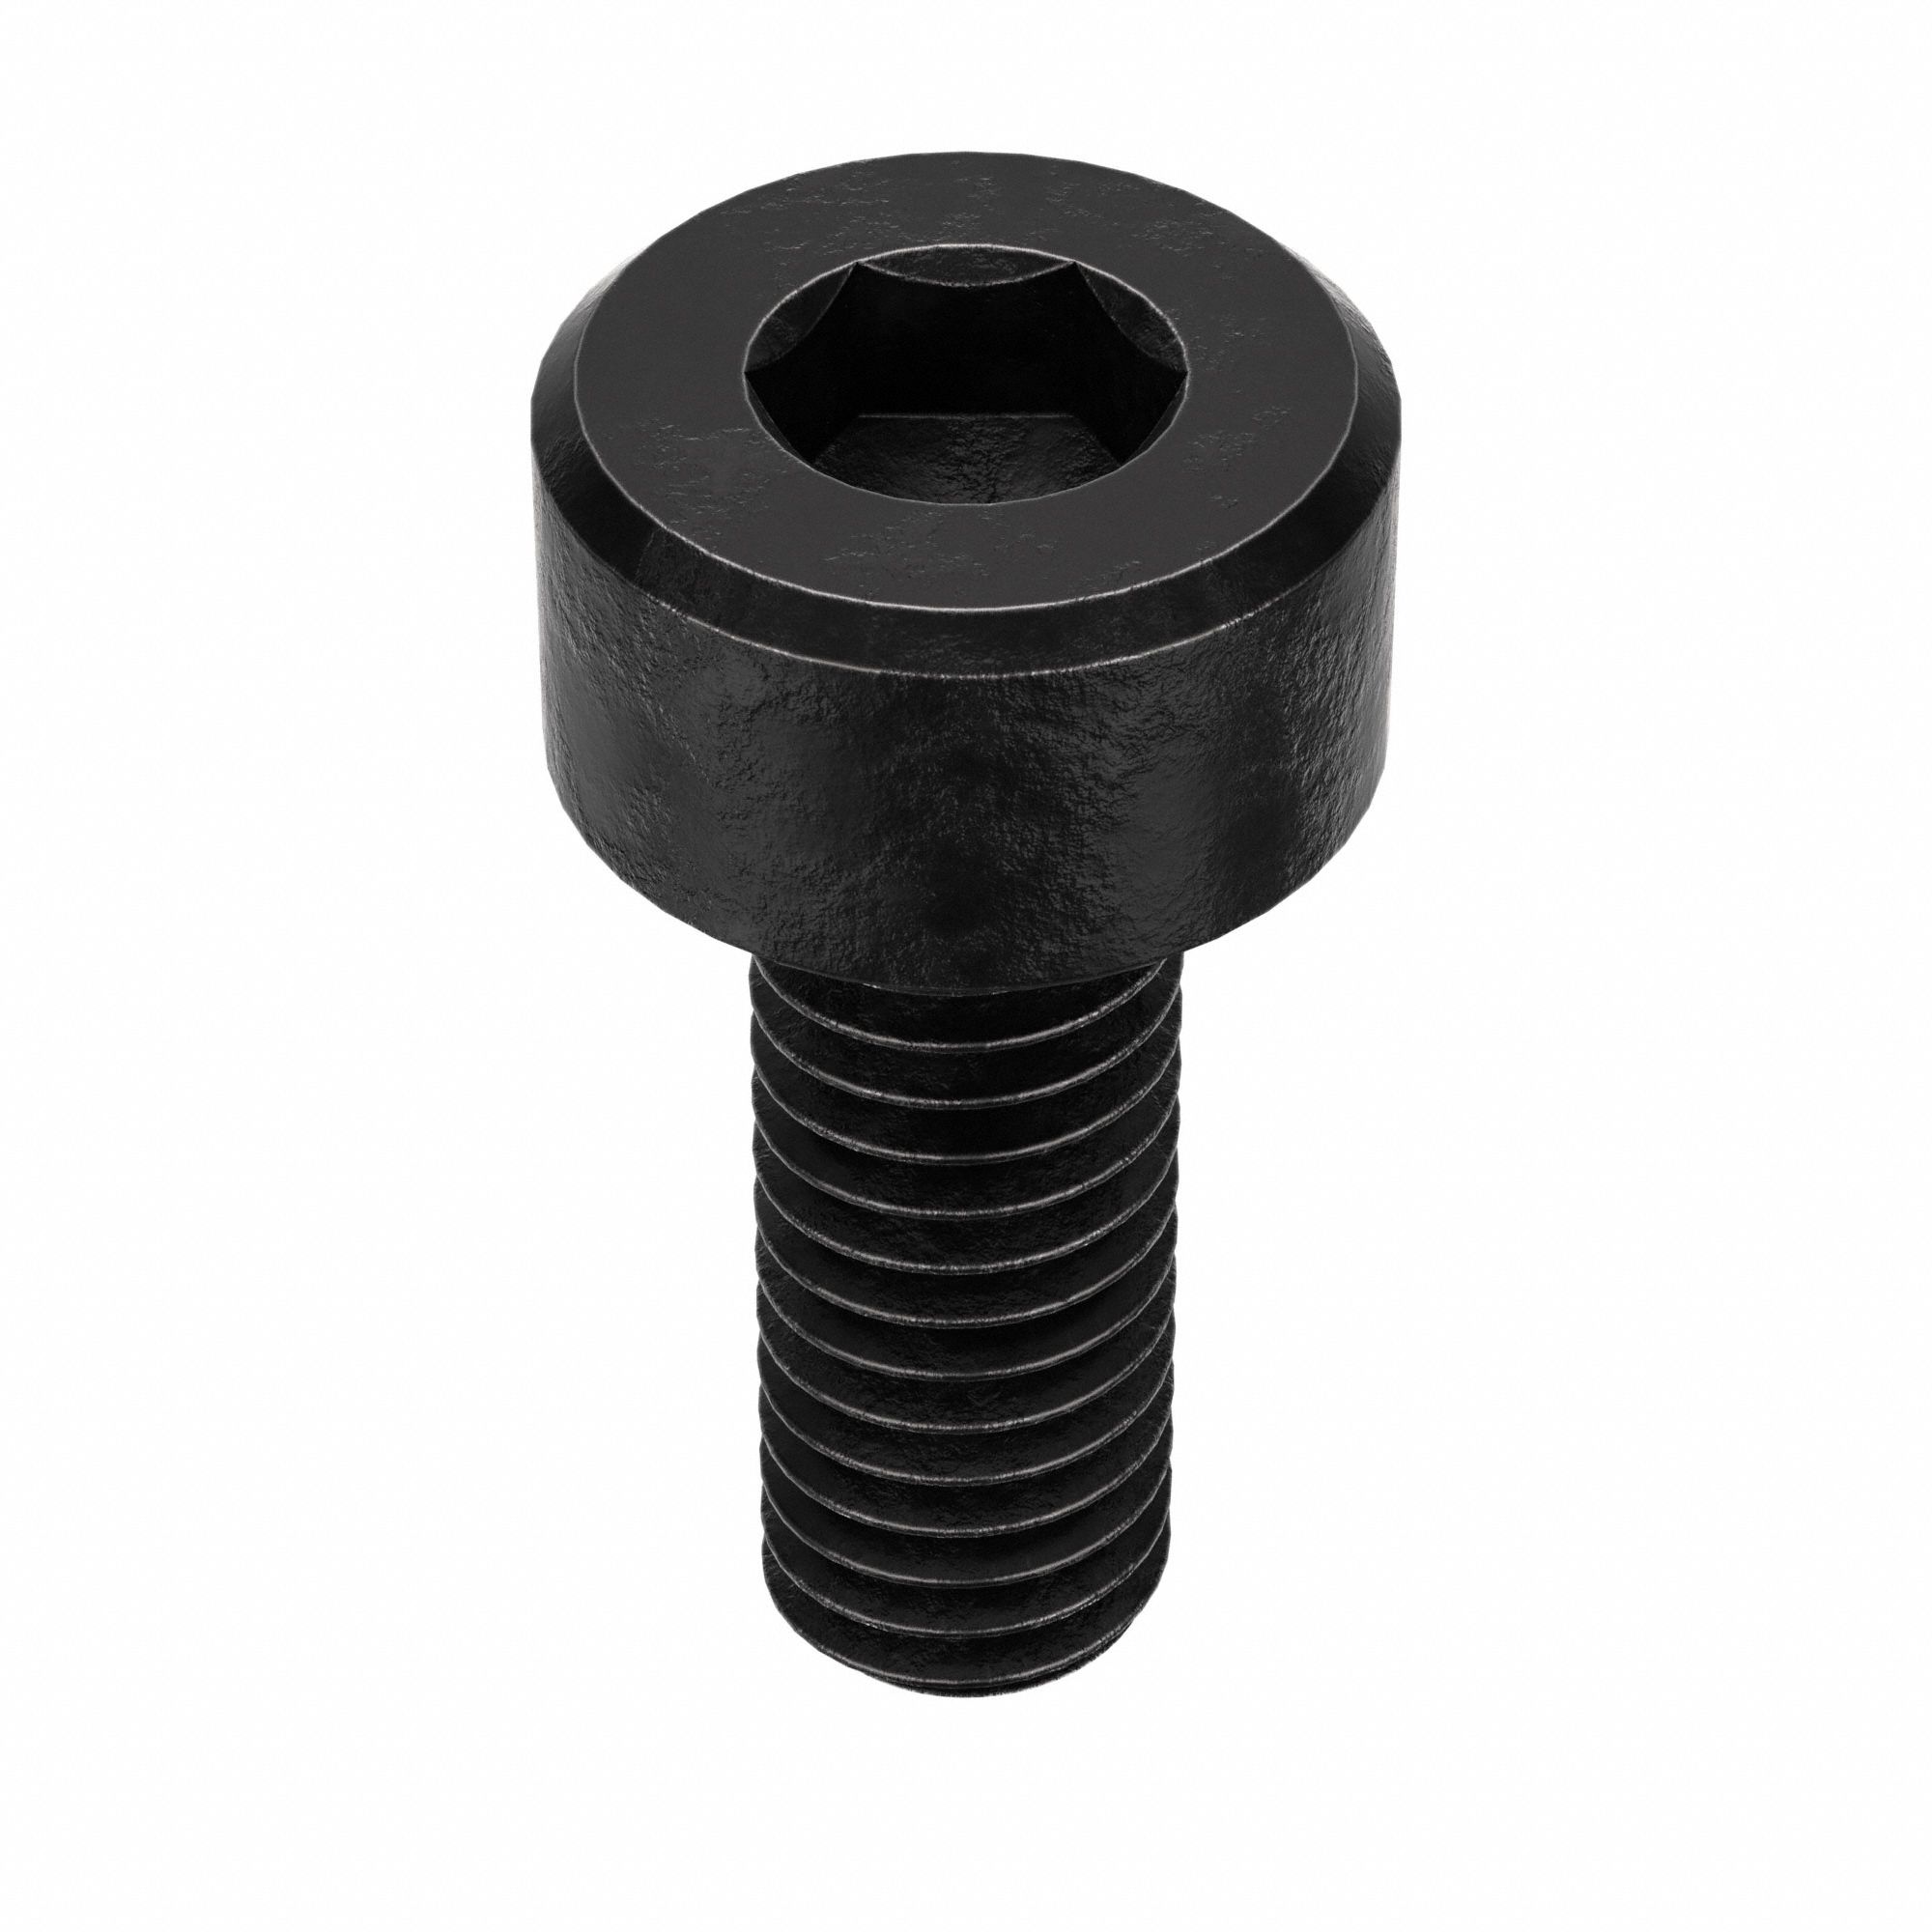 Socket Head Cap Screw: M3-0.5 Thread Size, 8 mm Lg, Std, Black Oxide,  Steel, Class 12.9, 100 PK